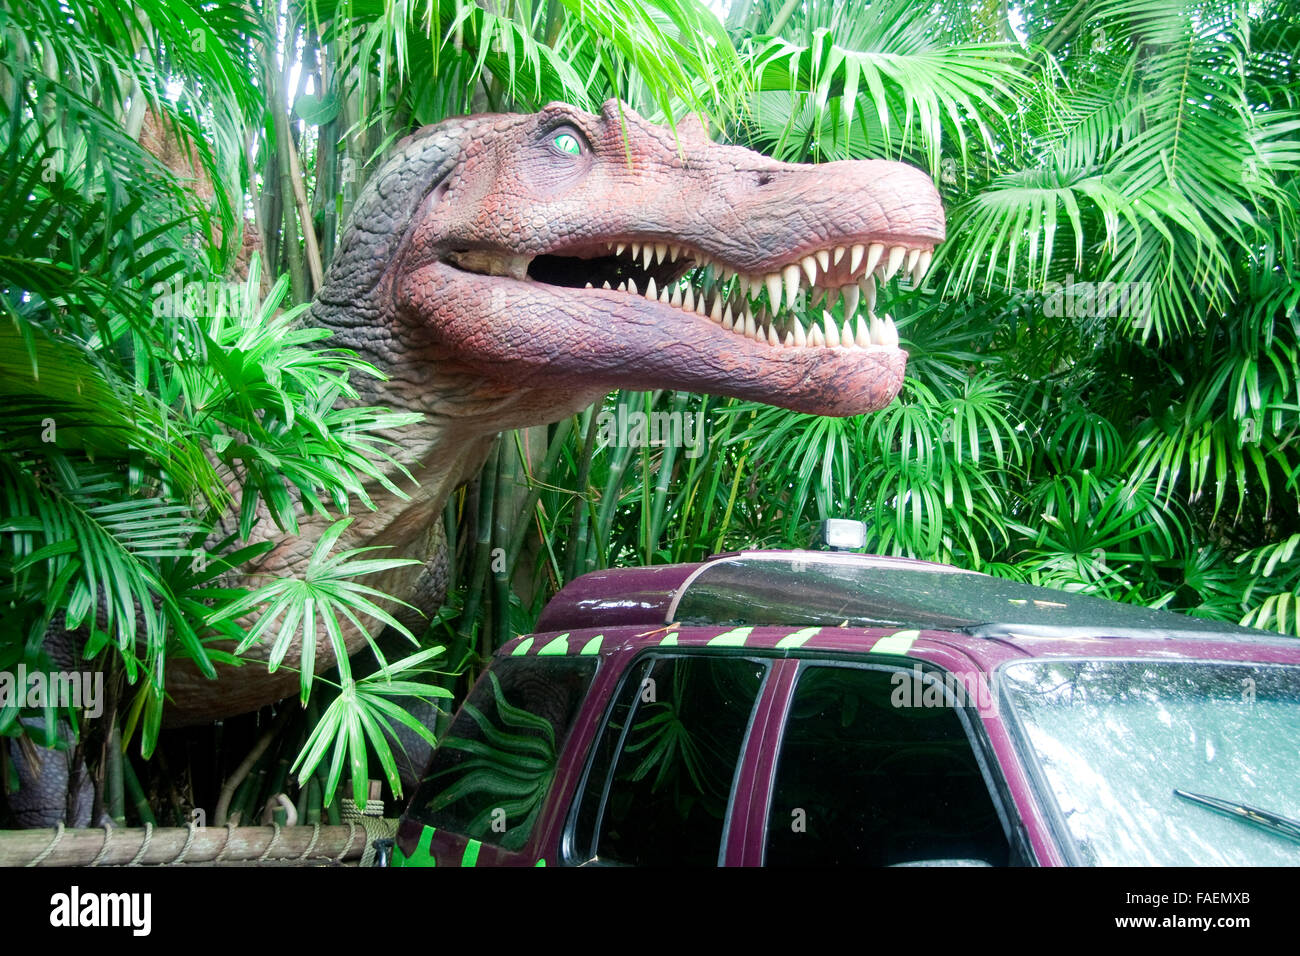 Jurassic park dinosaur immagini e fotografie stock ad alta risoluzione -  Alamy